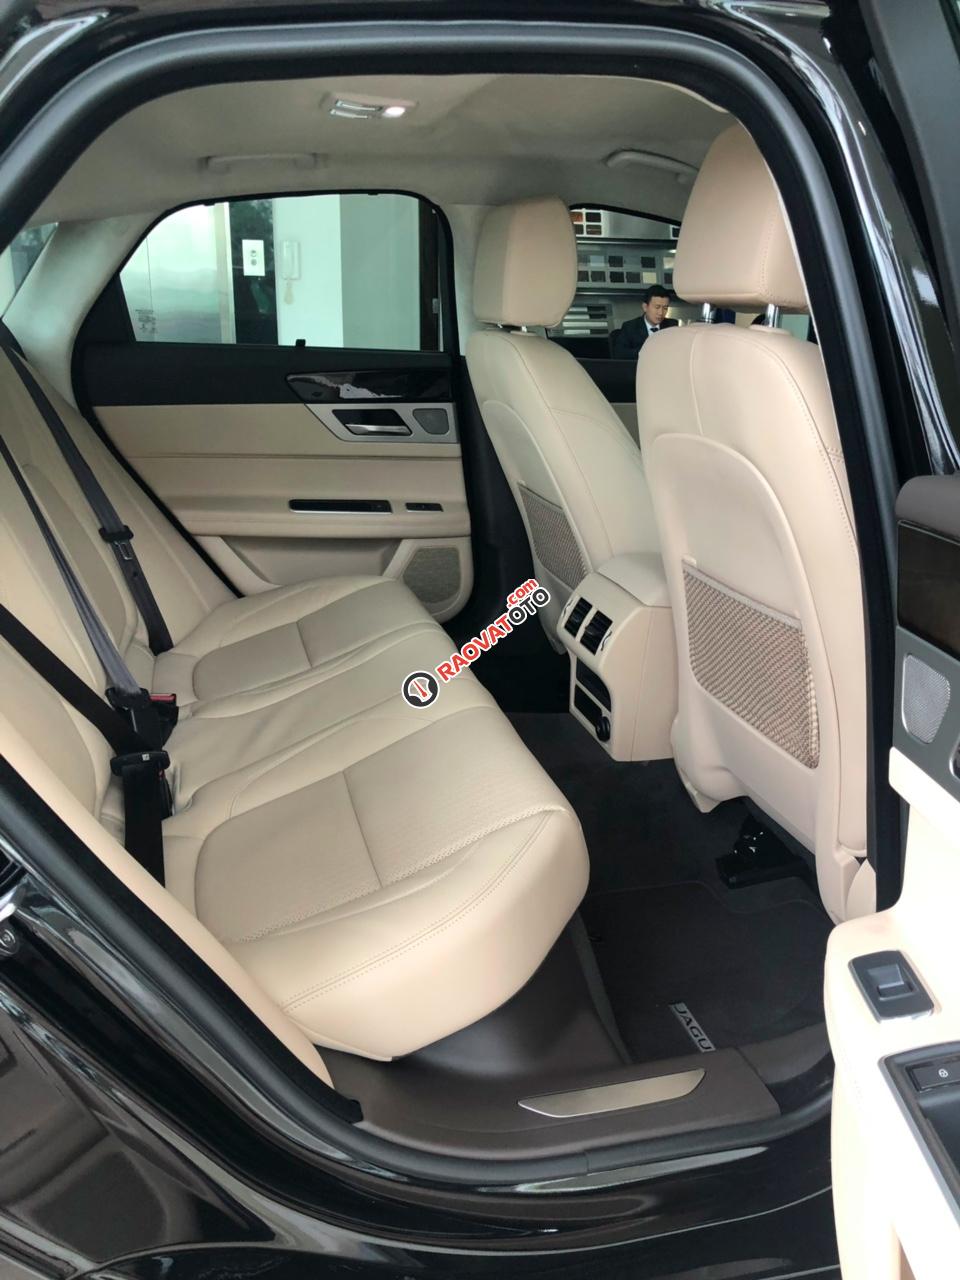 Bán Jaguar XF Prestige 2018 - 2019 màu trắng, xe nhập Anh, tặng bảo dưỡng, bảo hành - 0932222253 giao ngay-3